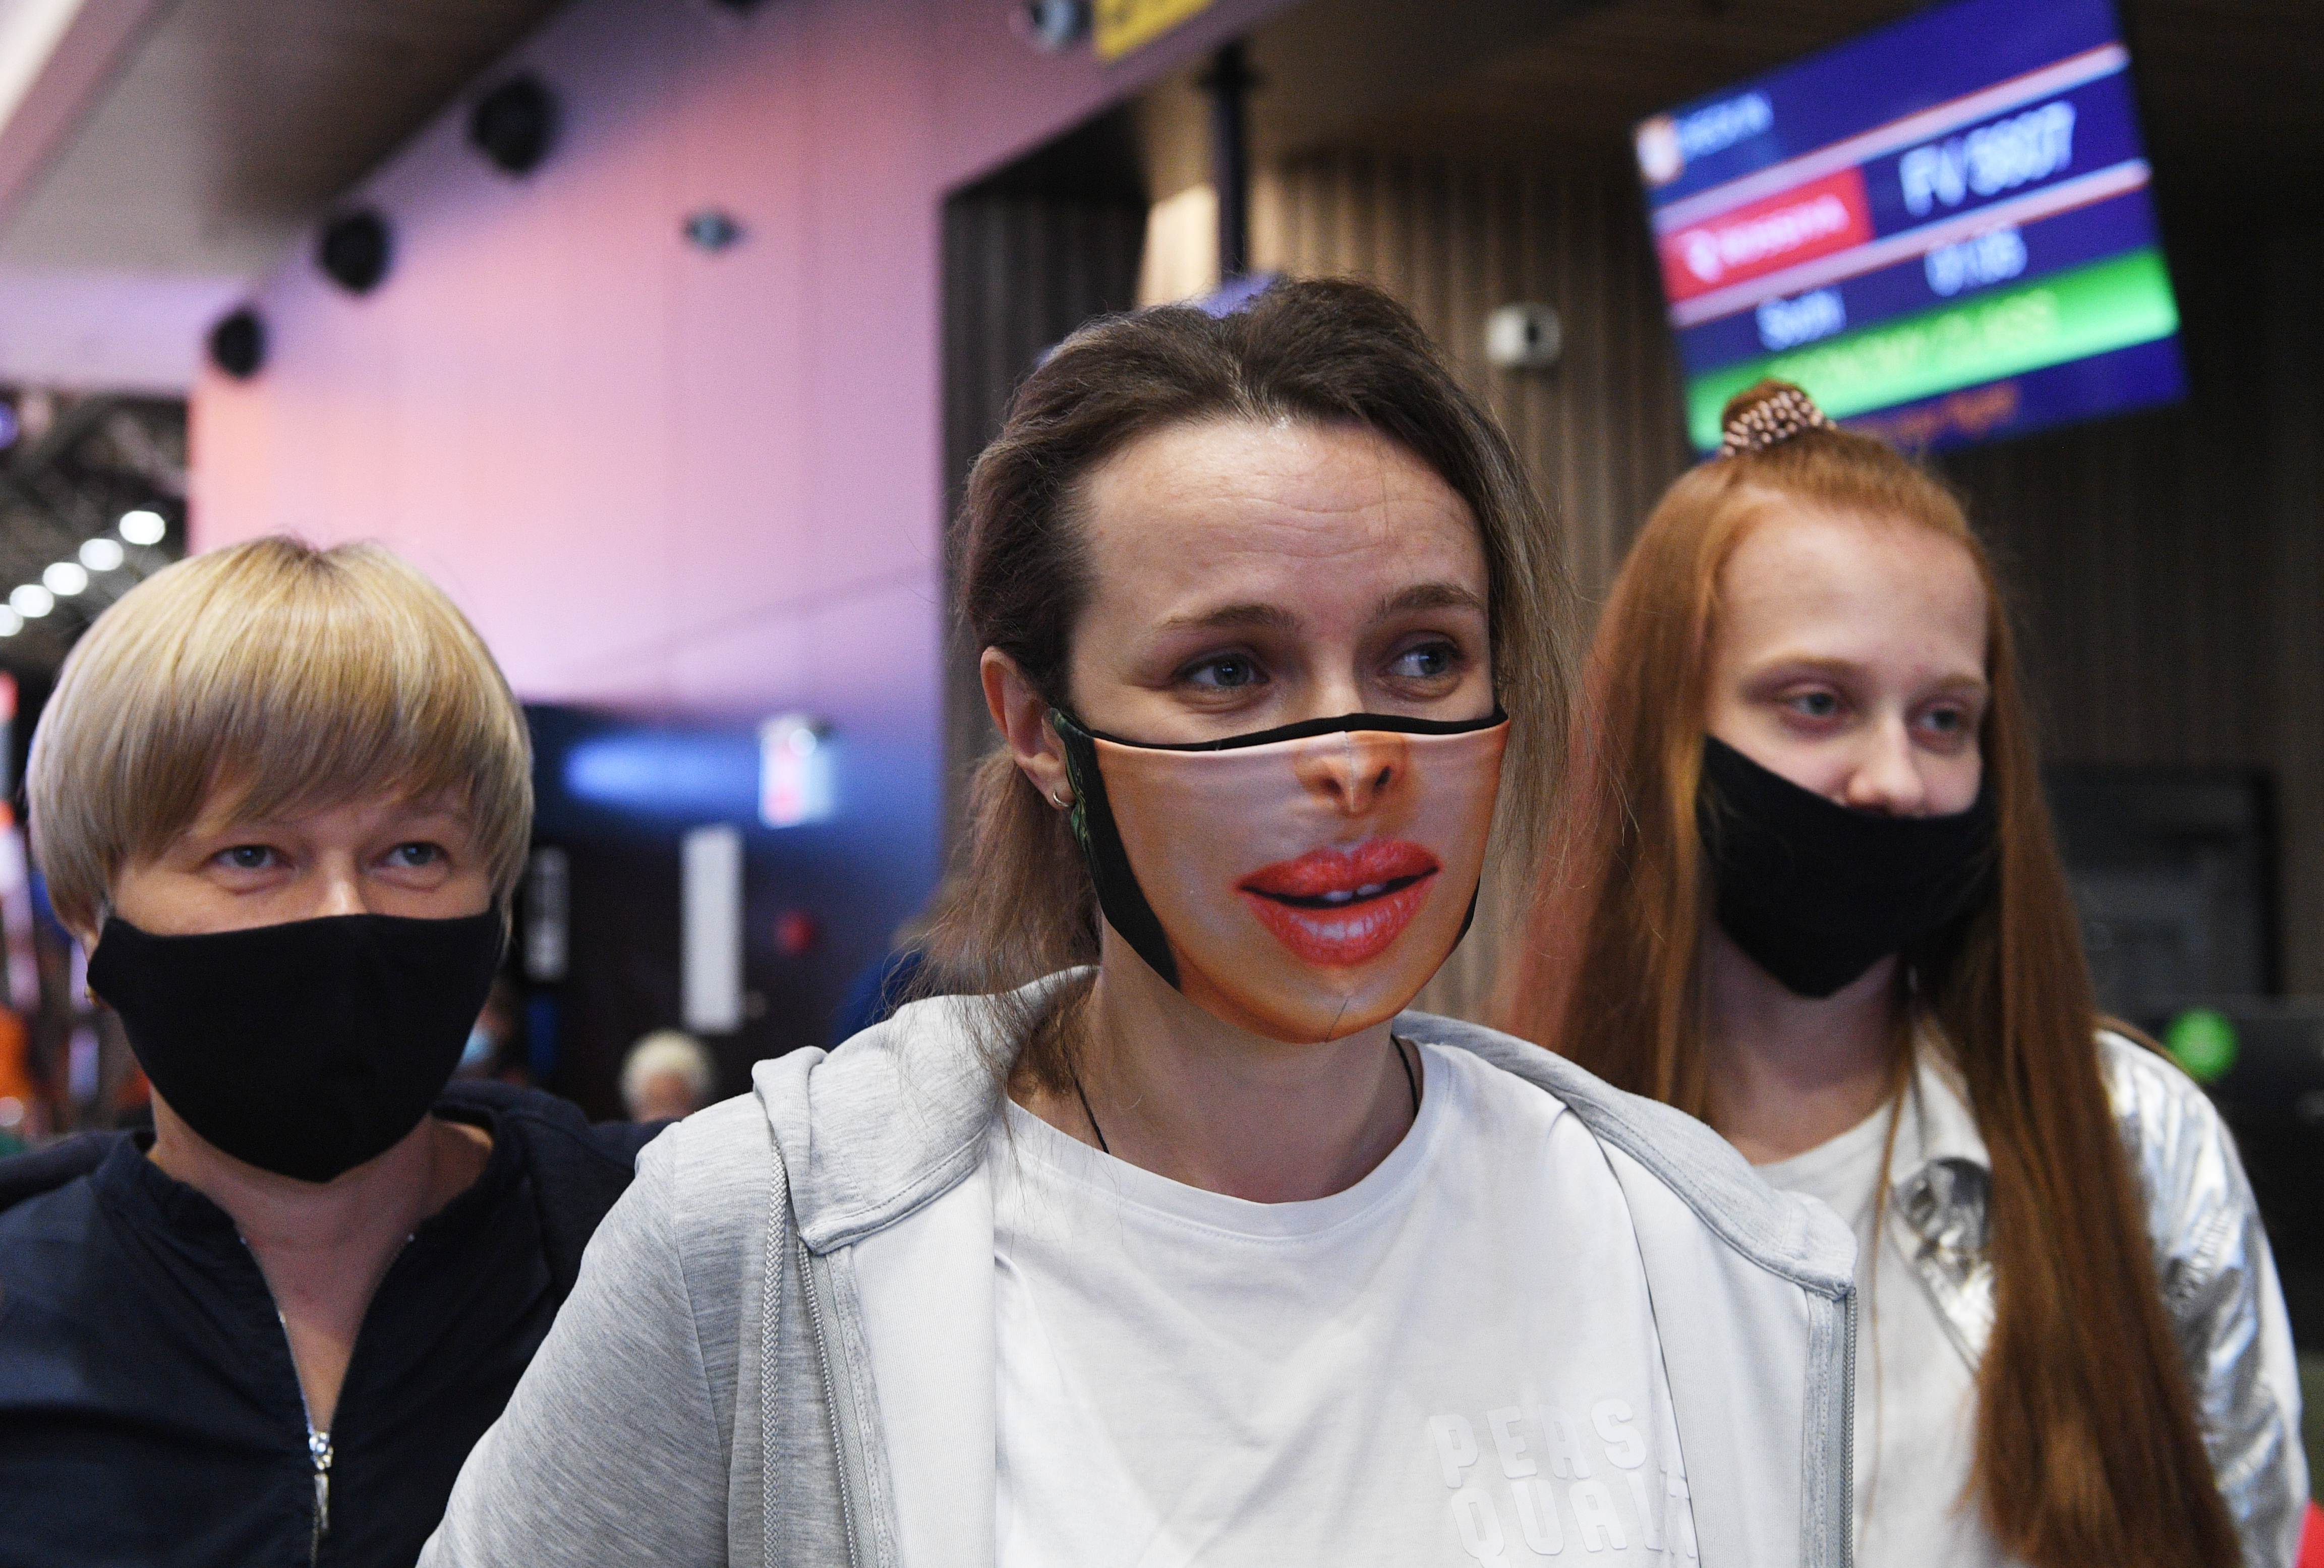 Москва будет маска